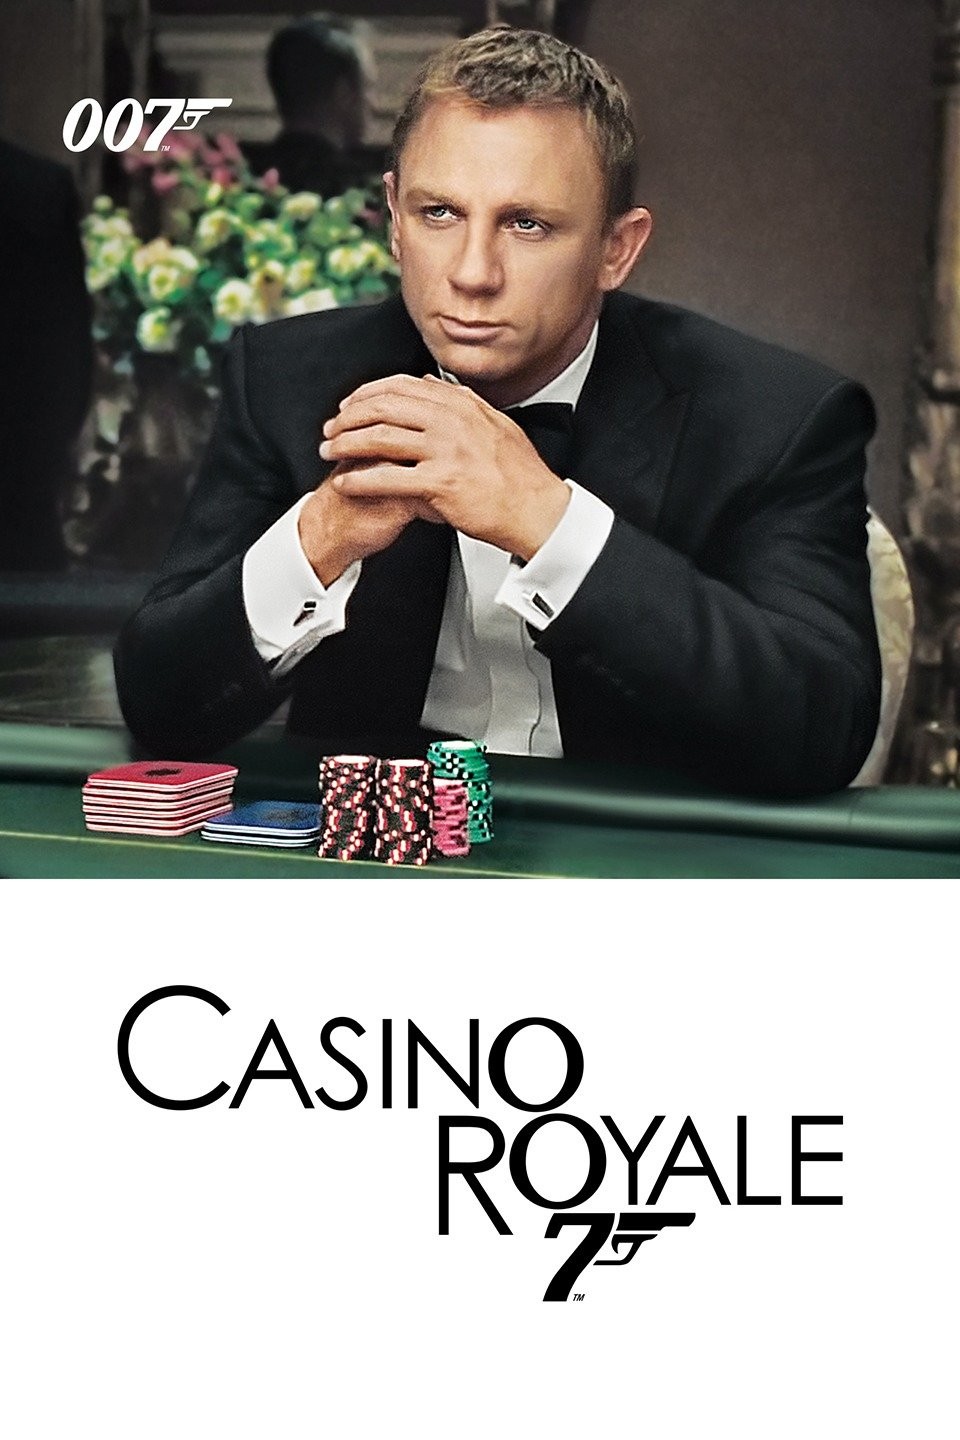 James Bond playing poker